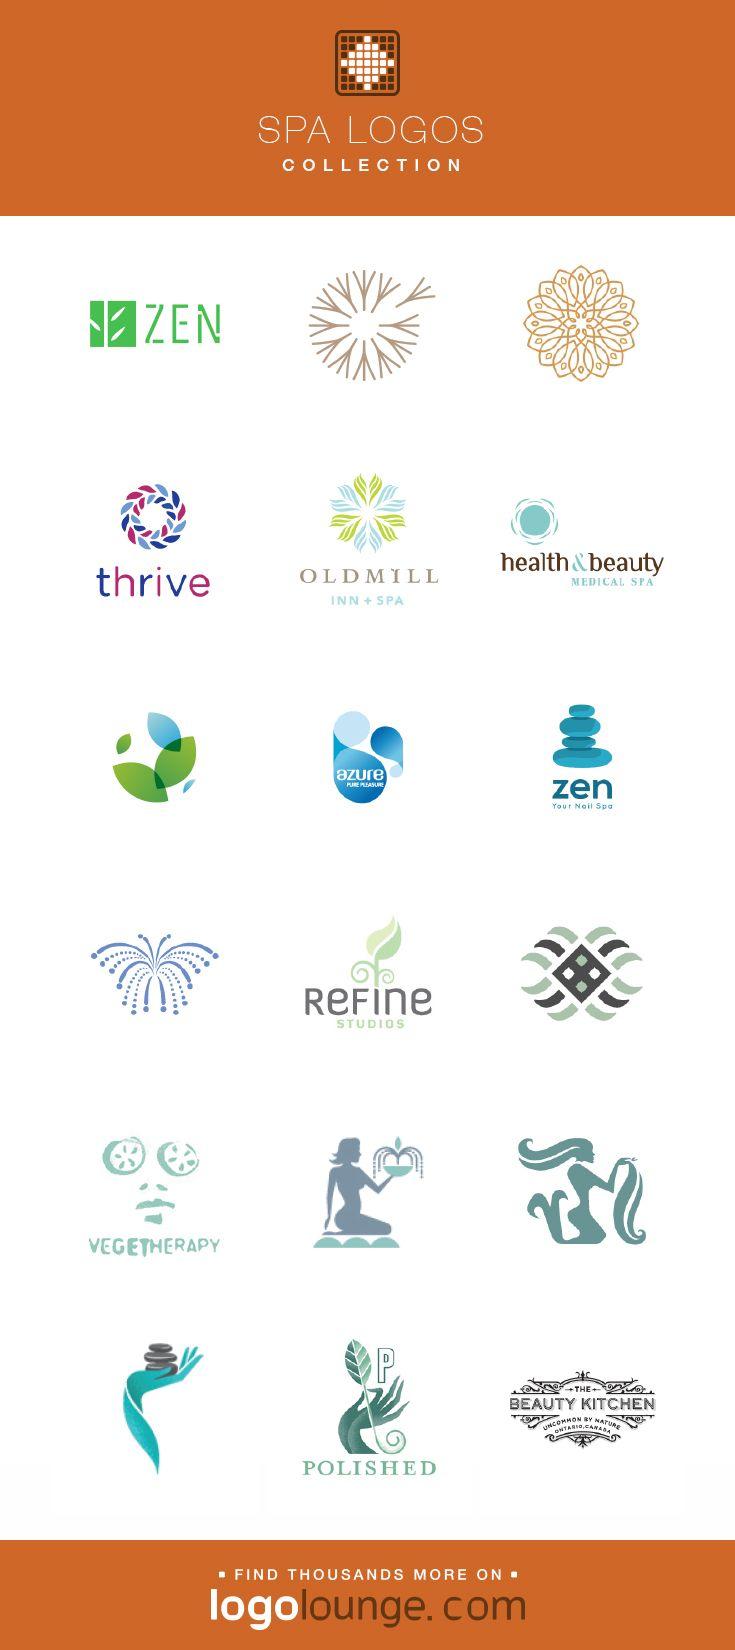 Zen Health Logo - Logo Collection : Spa vector logo designs. Zen, peace, fountain ...